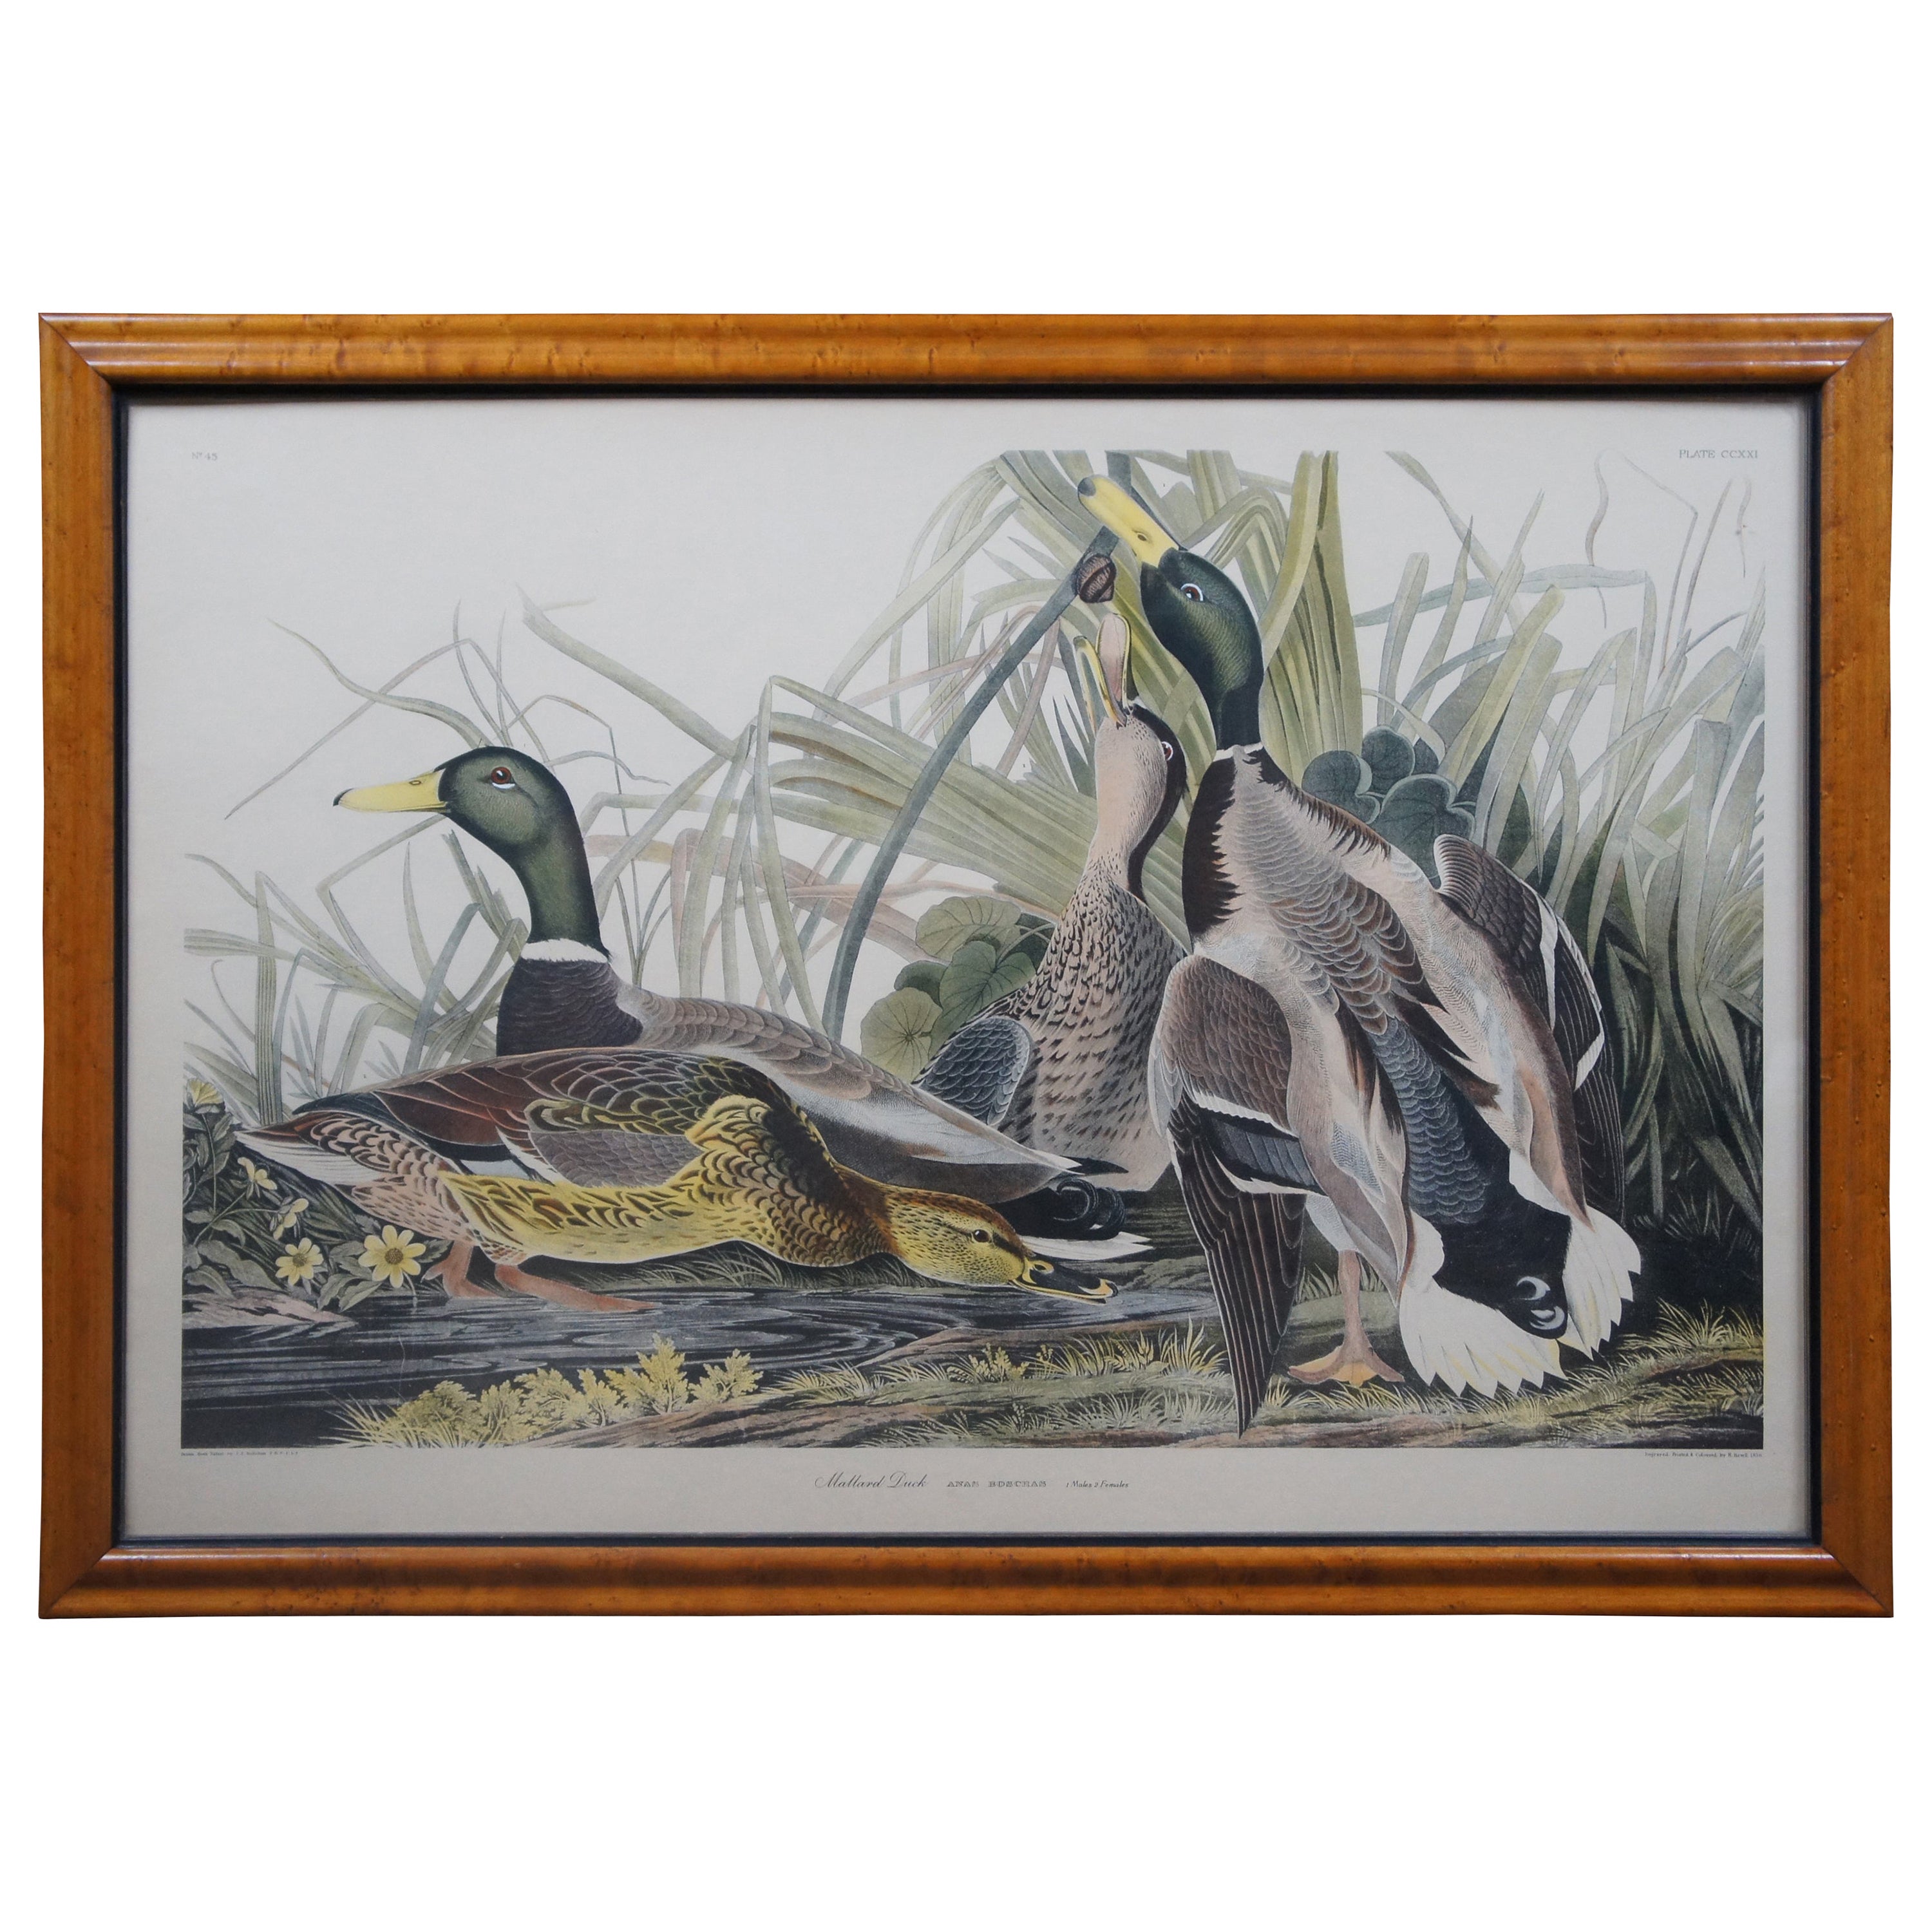 Antique Robert Havell 1836 Mallard Duck Engraving Audubon Realism Framed